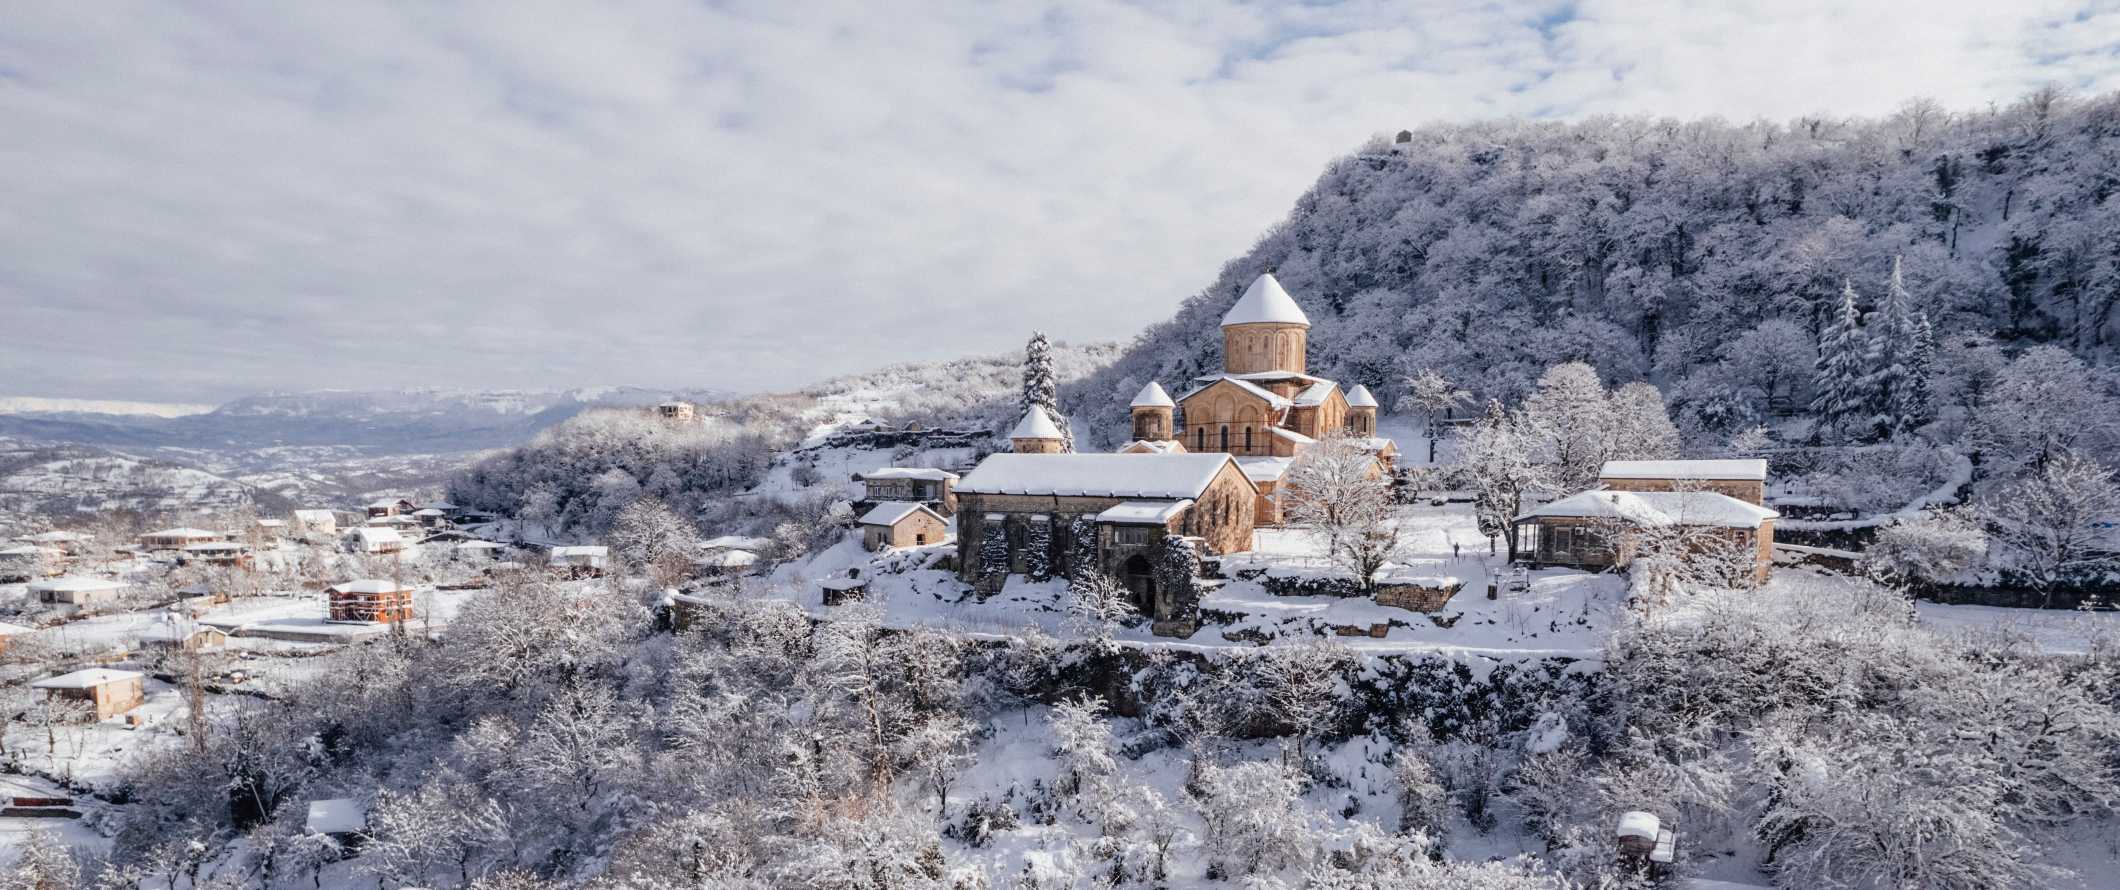 Tatev hilltop monastery blanked in snow in Armenia